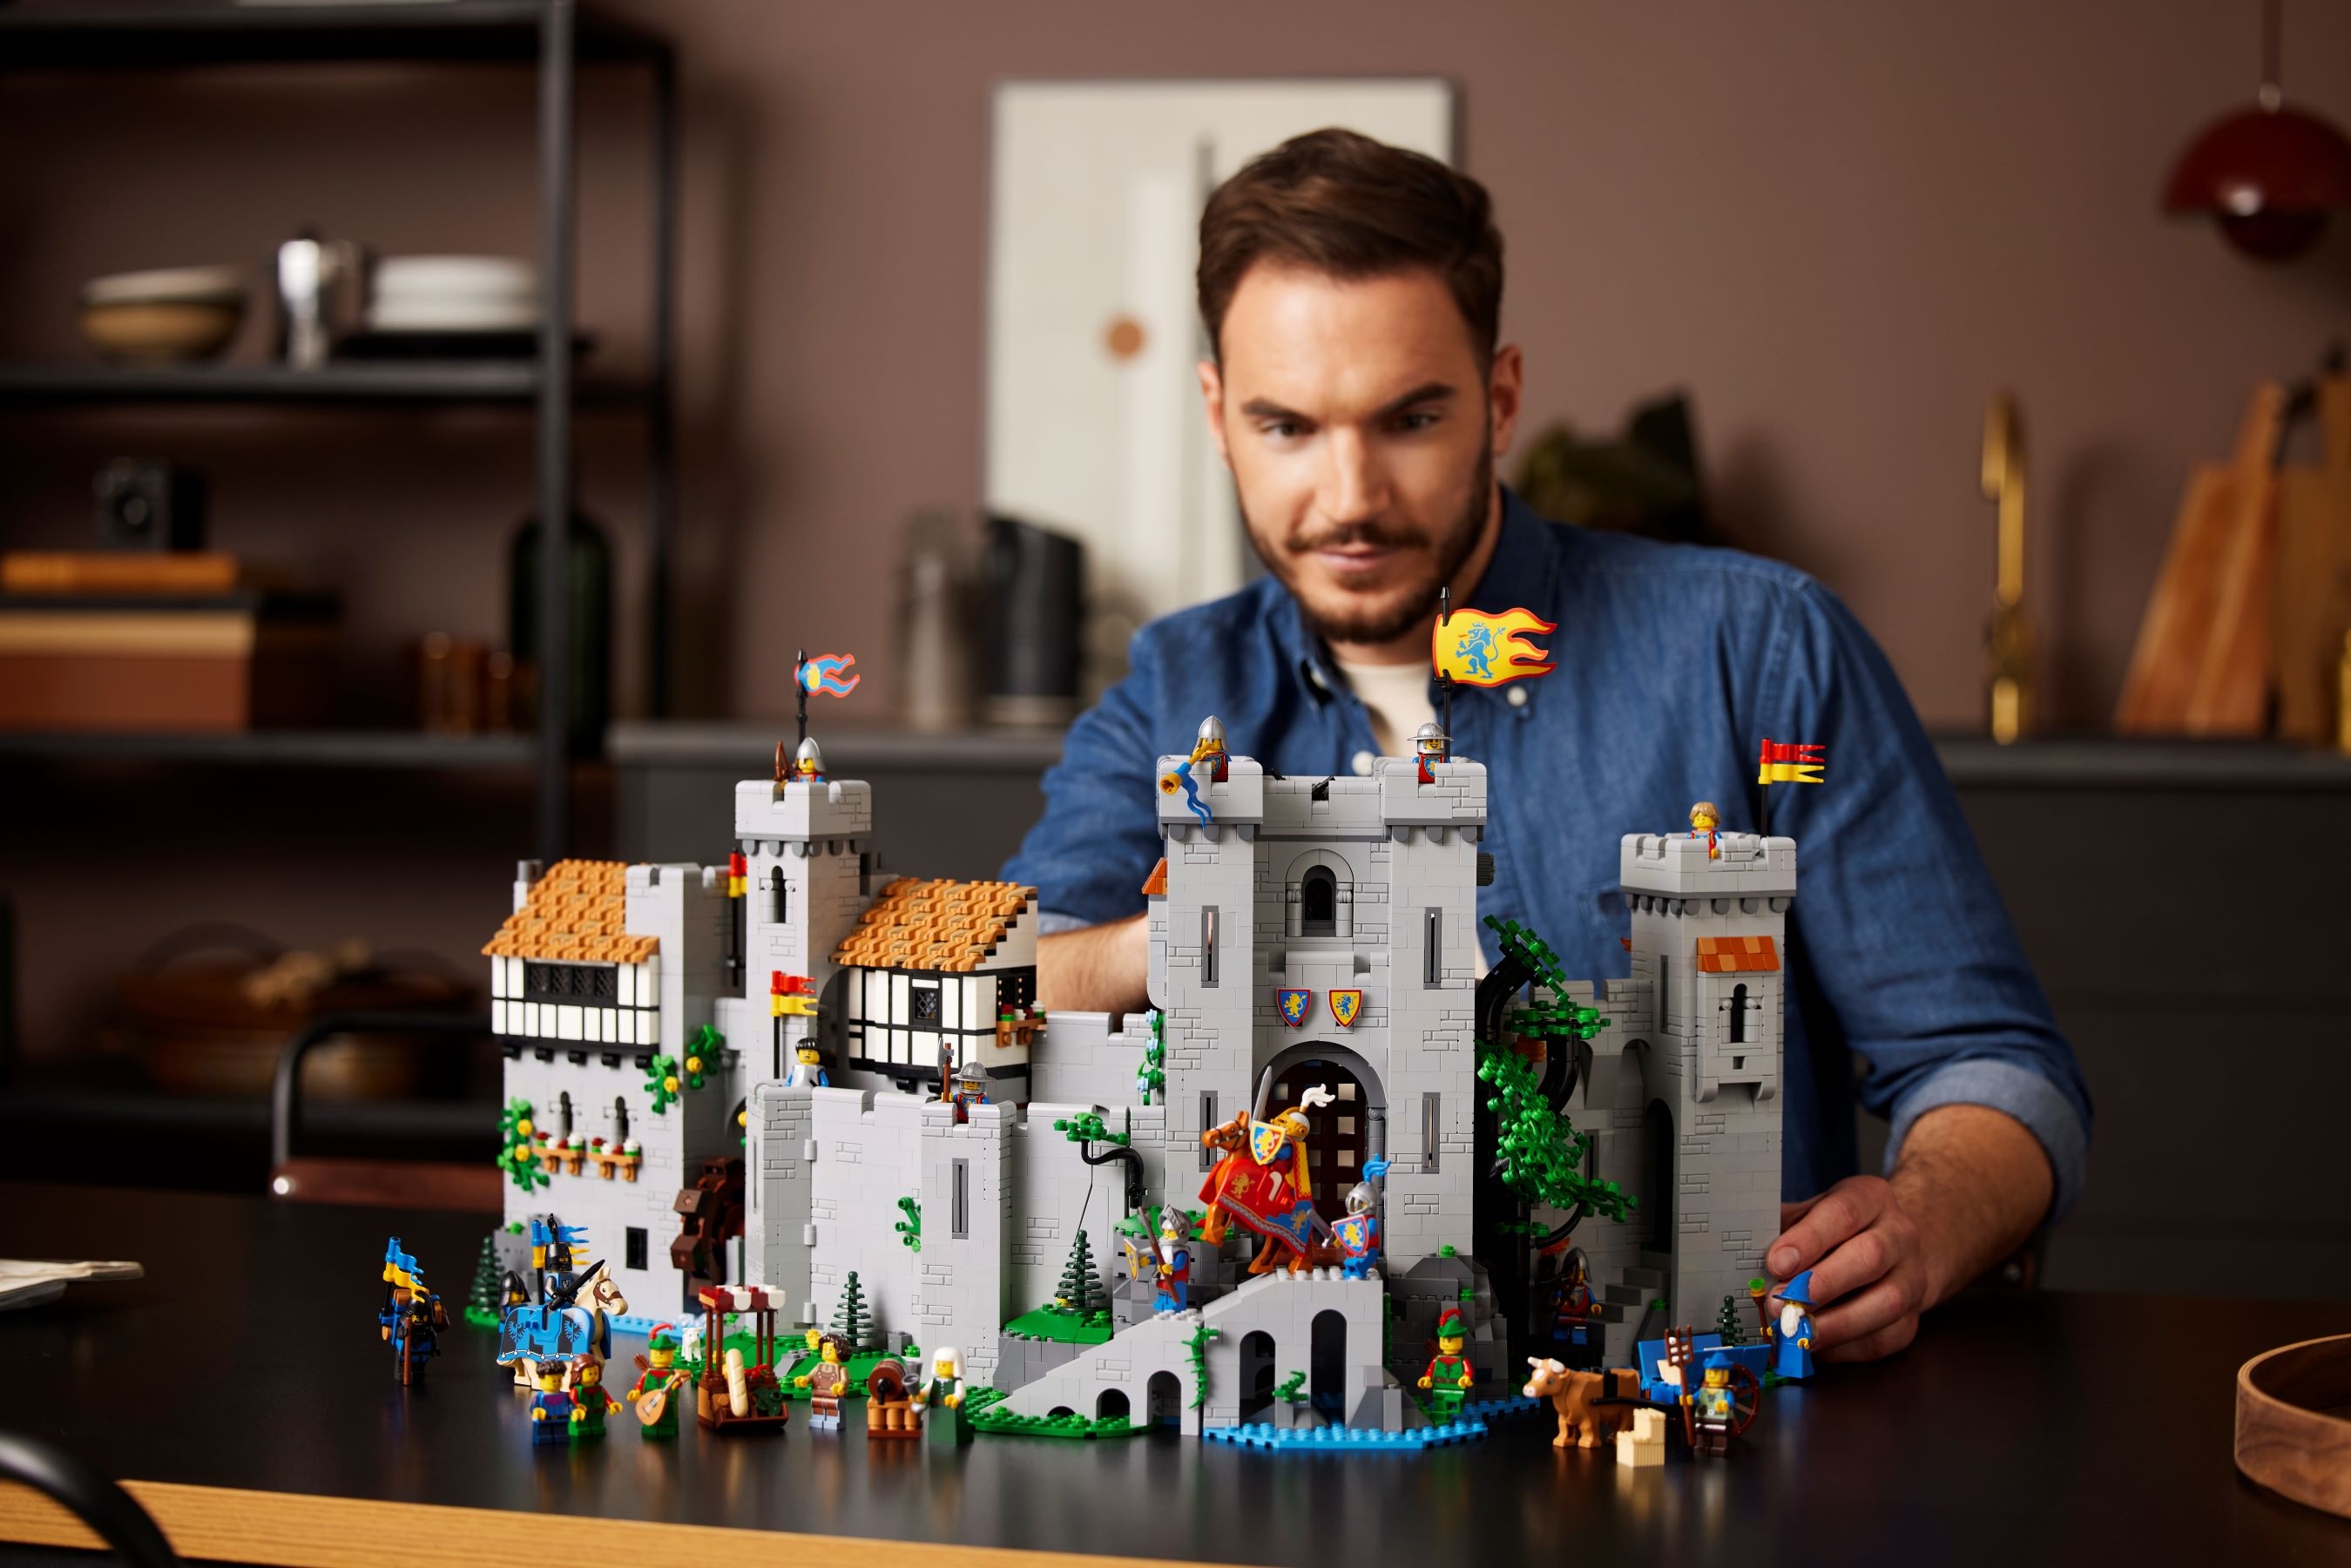 dam industrie Delegatie Leeuwenridders kasteel 10305 | LEGO® Icons | Officiële LEGO® winkel NL